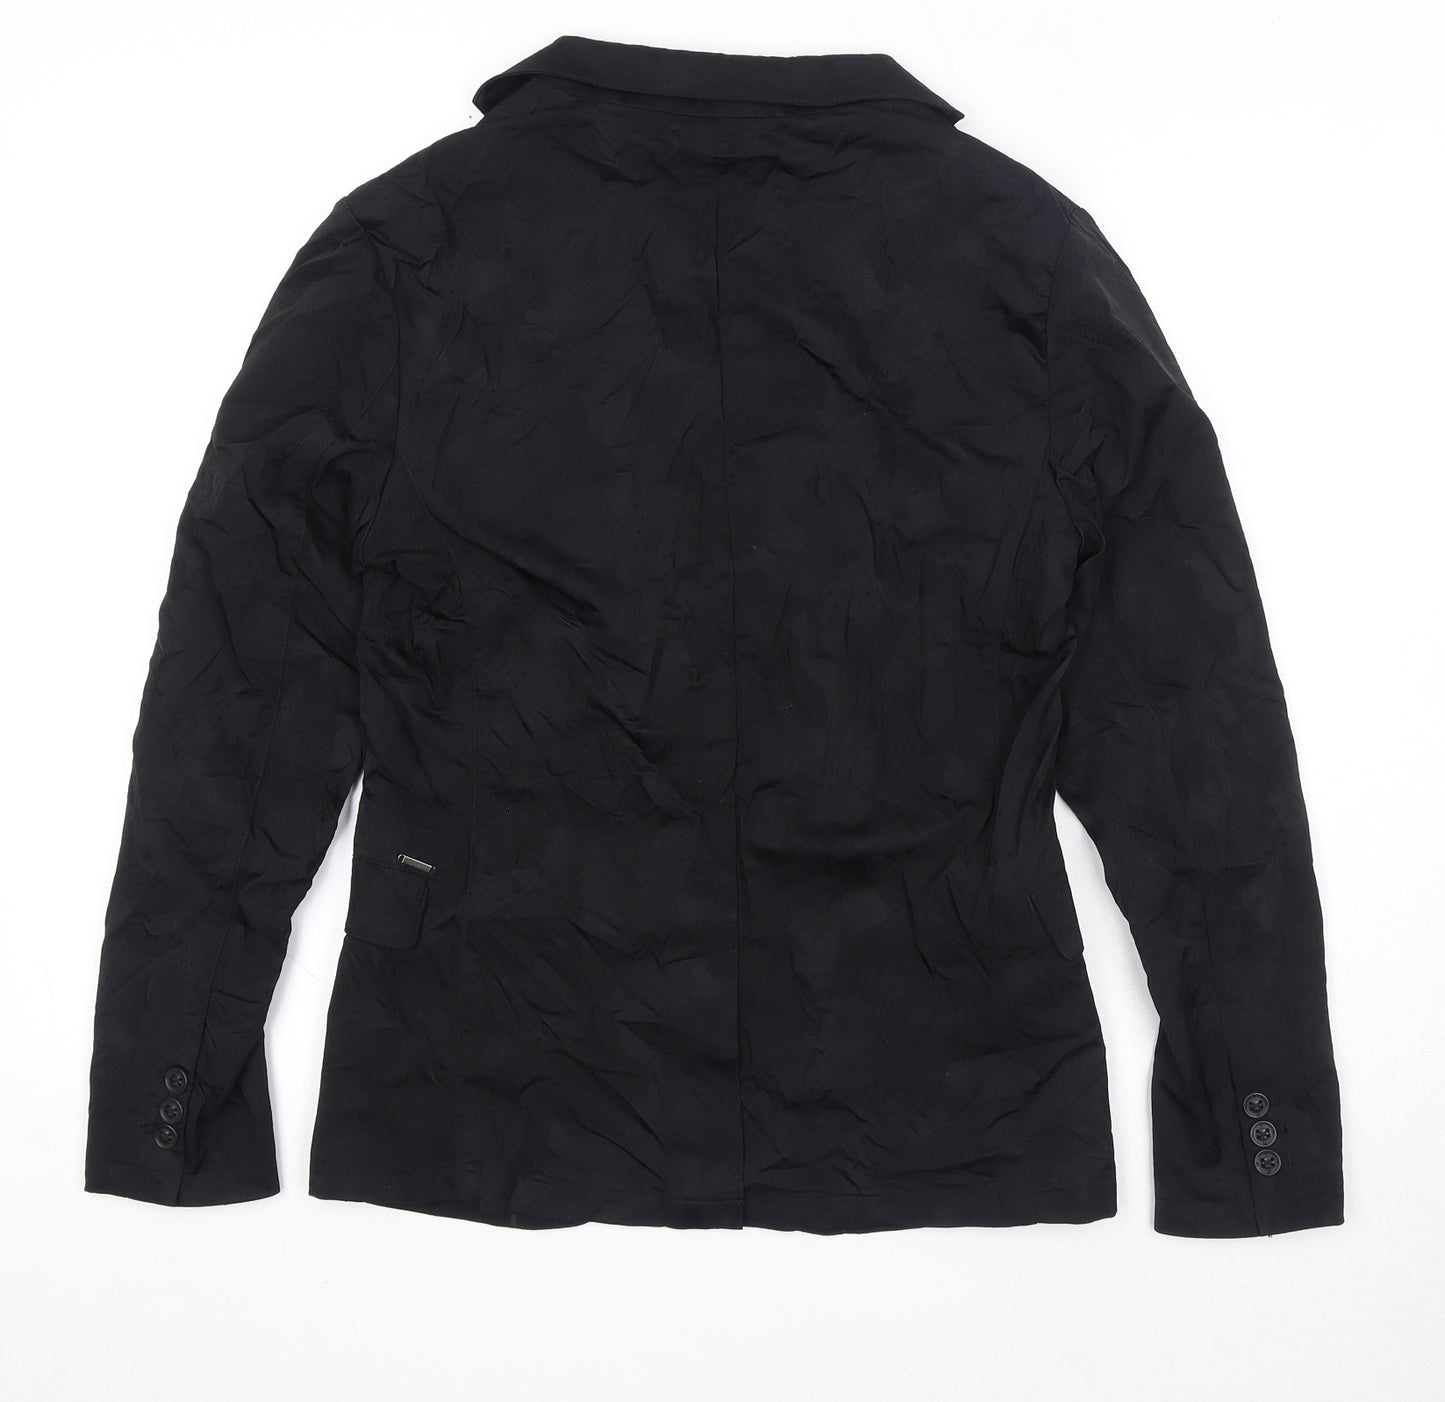 Zara Womens Black Jacket Blazer Size 14 Button